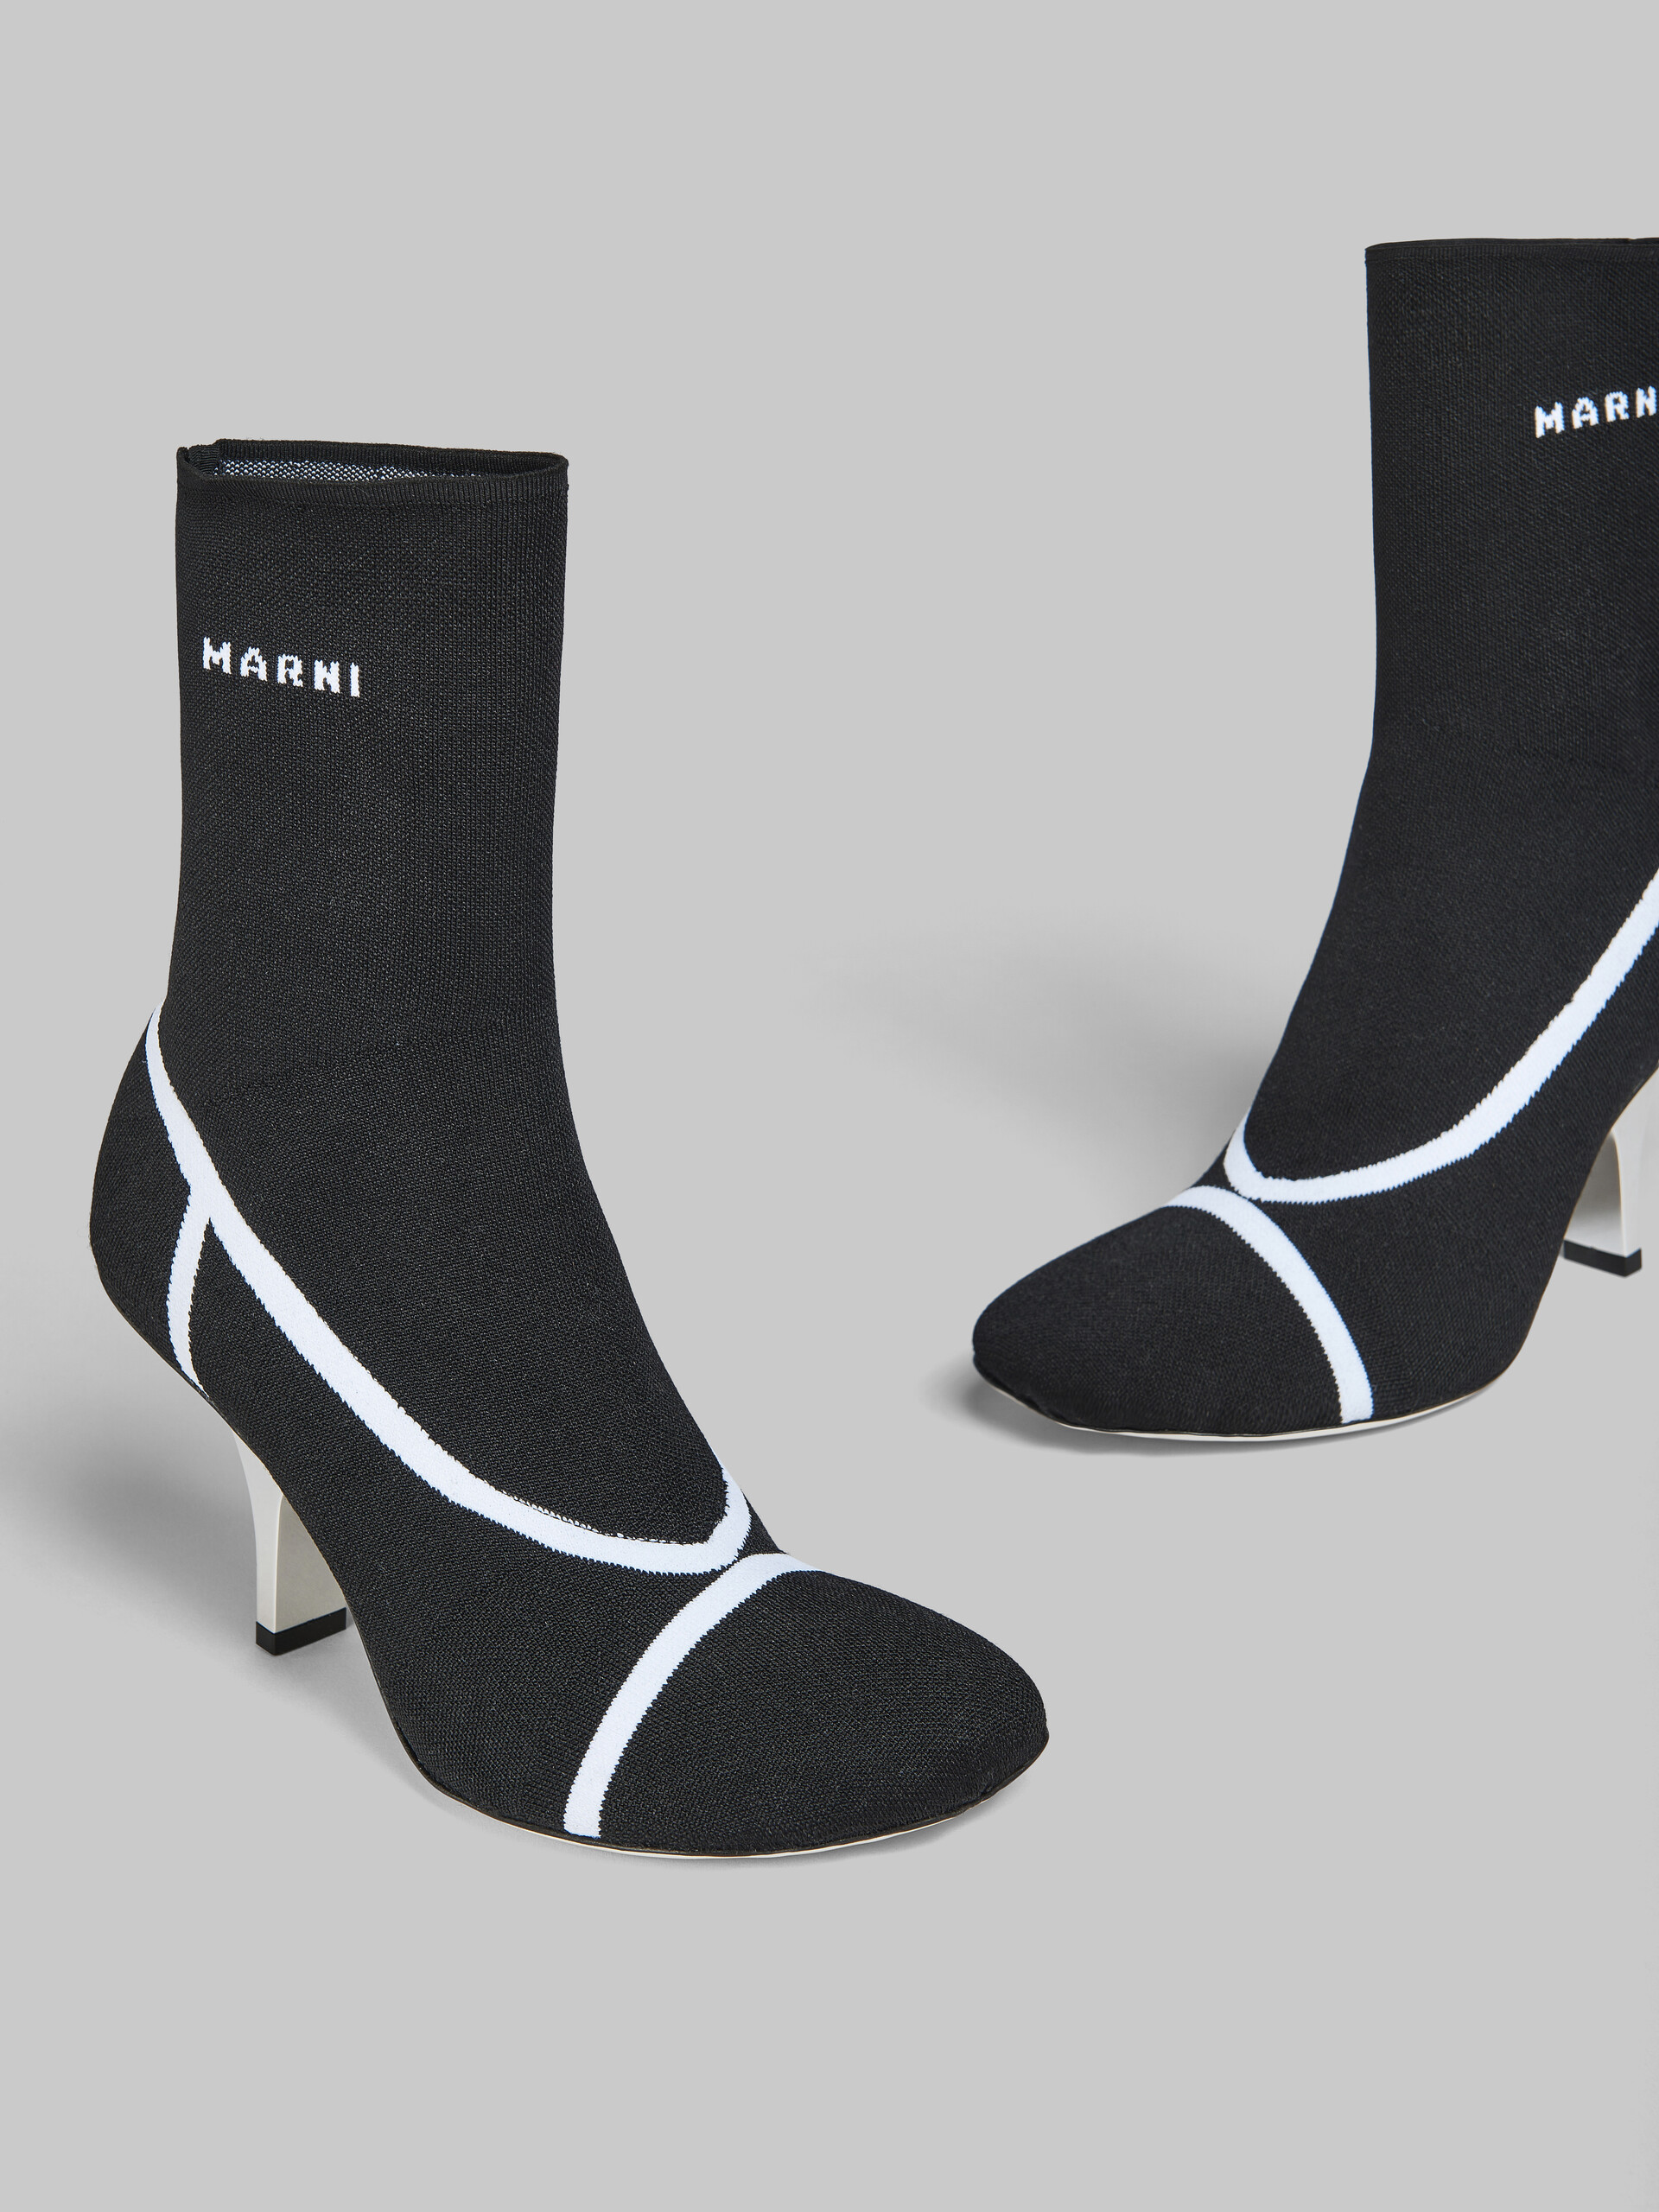 Bottines chaussettes Fancy en maille stretch noire - Bottes - Image 4